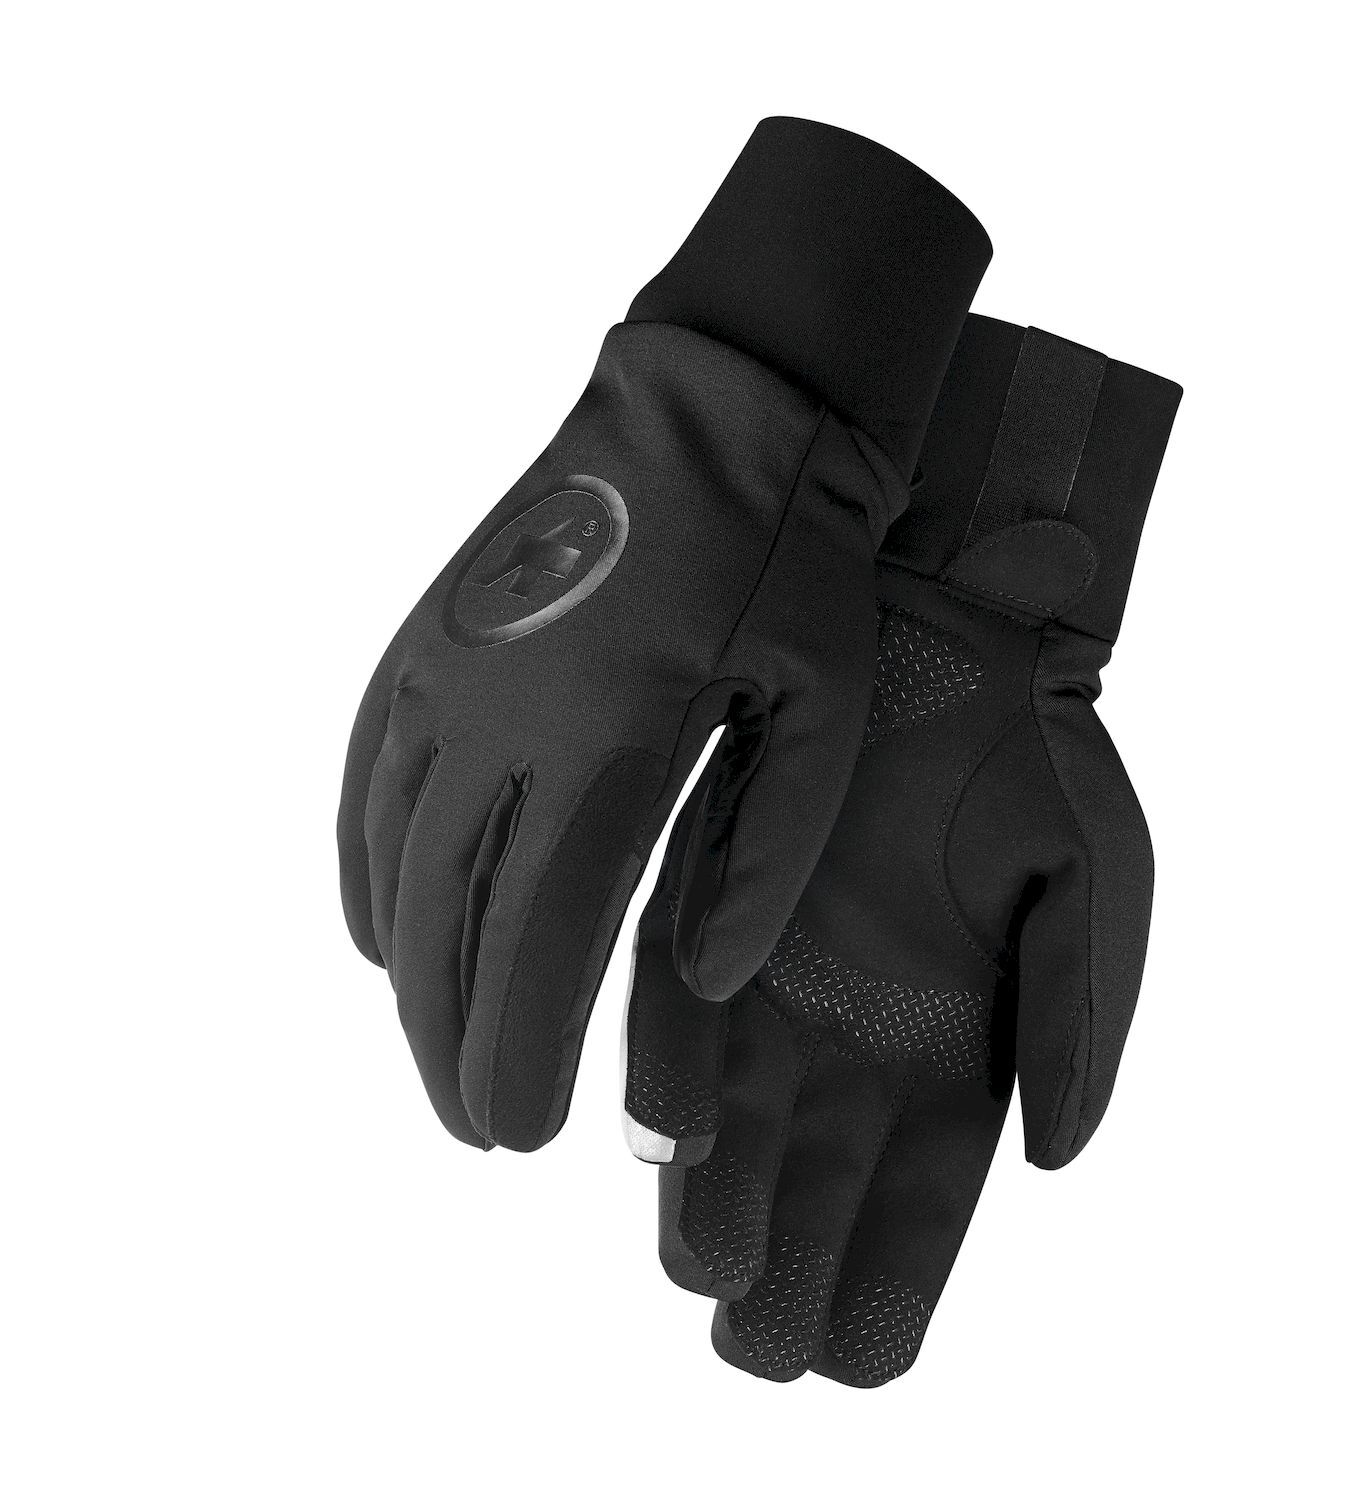 Assos Ultraz Winter Gloves - Cycling gloves